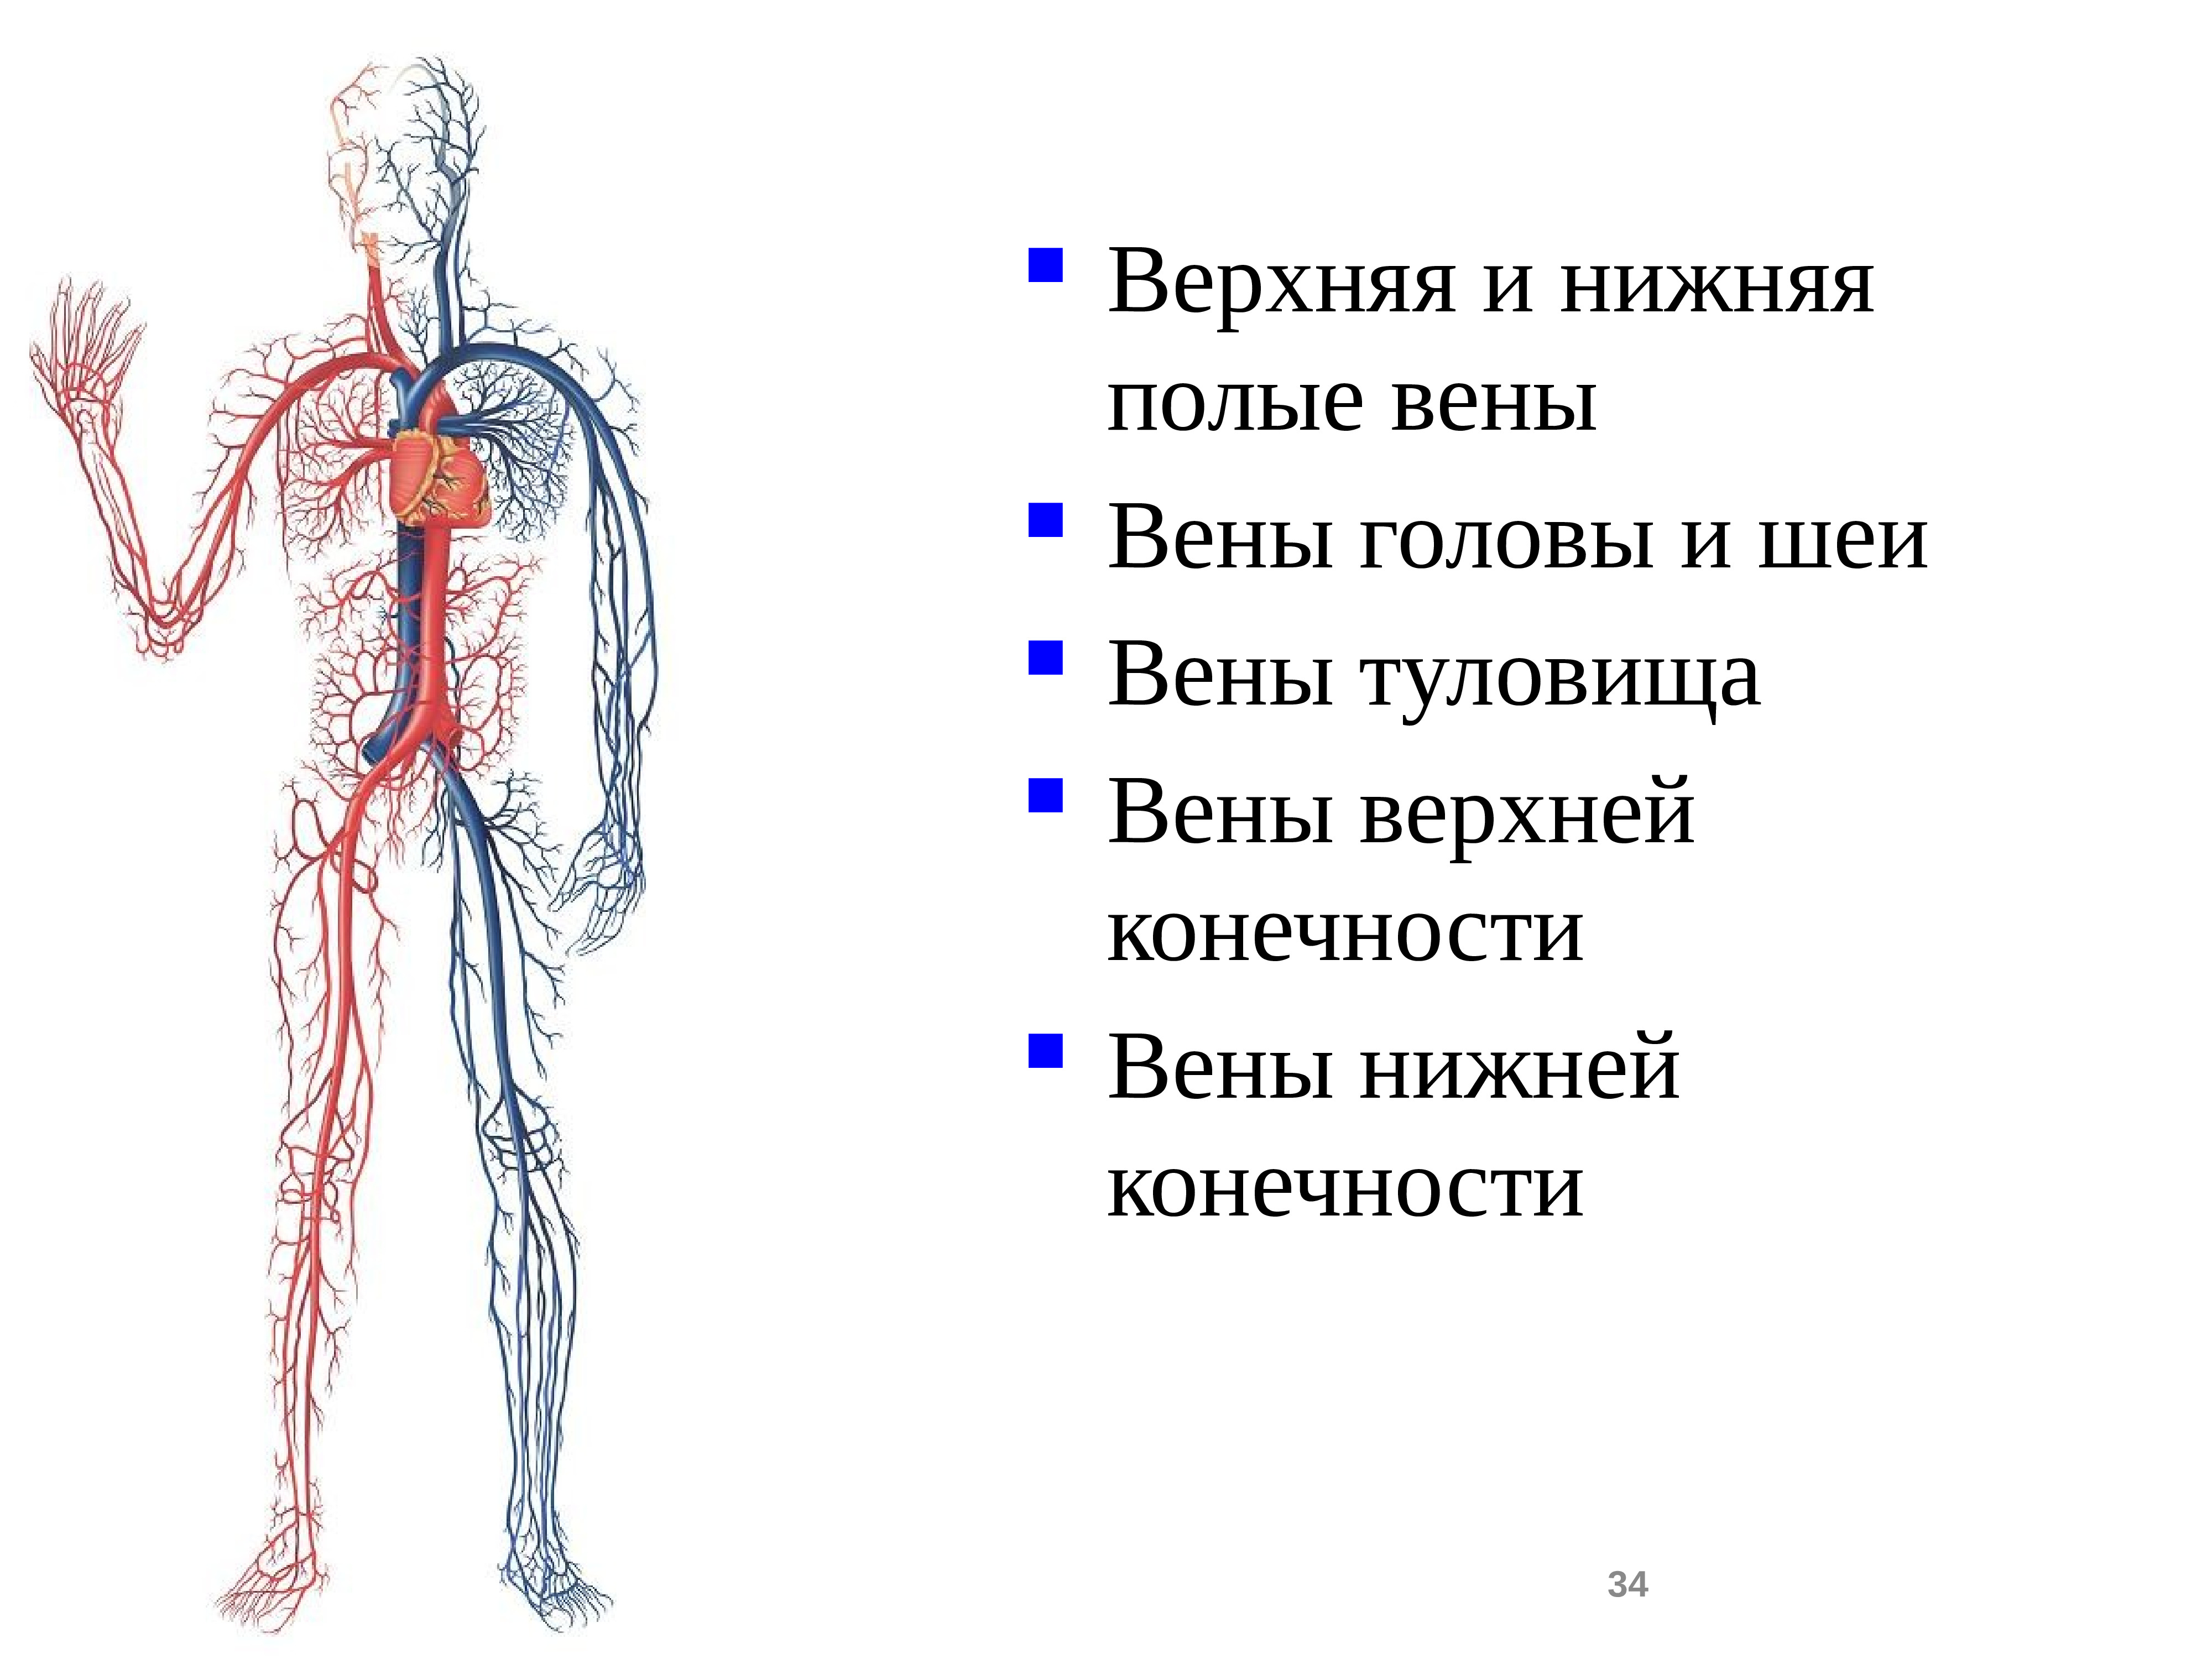 Нижняя полая вена образуется. Система верхней и нижней полых вен. Вены анатомия верхняя полая Вена. Кровеносная система человека нижняя полая Вена. Верхняя полая Вена и нижняя полая Вена.